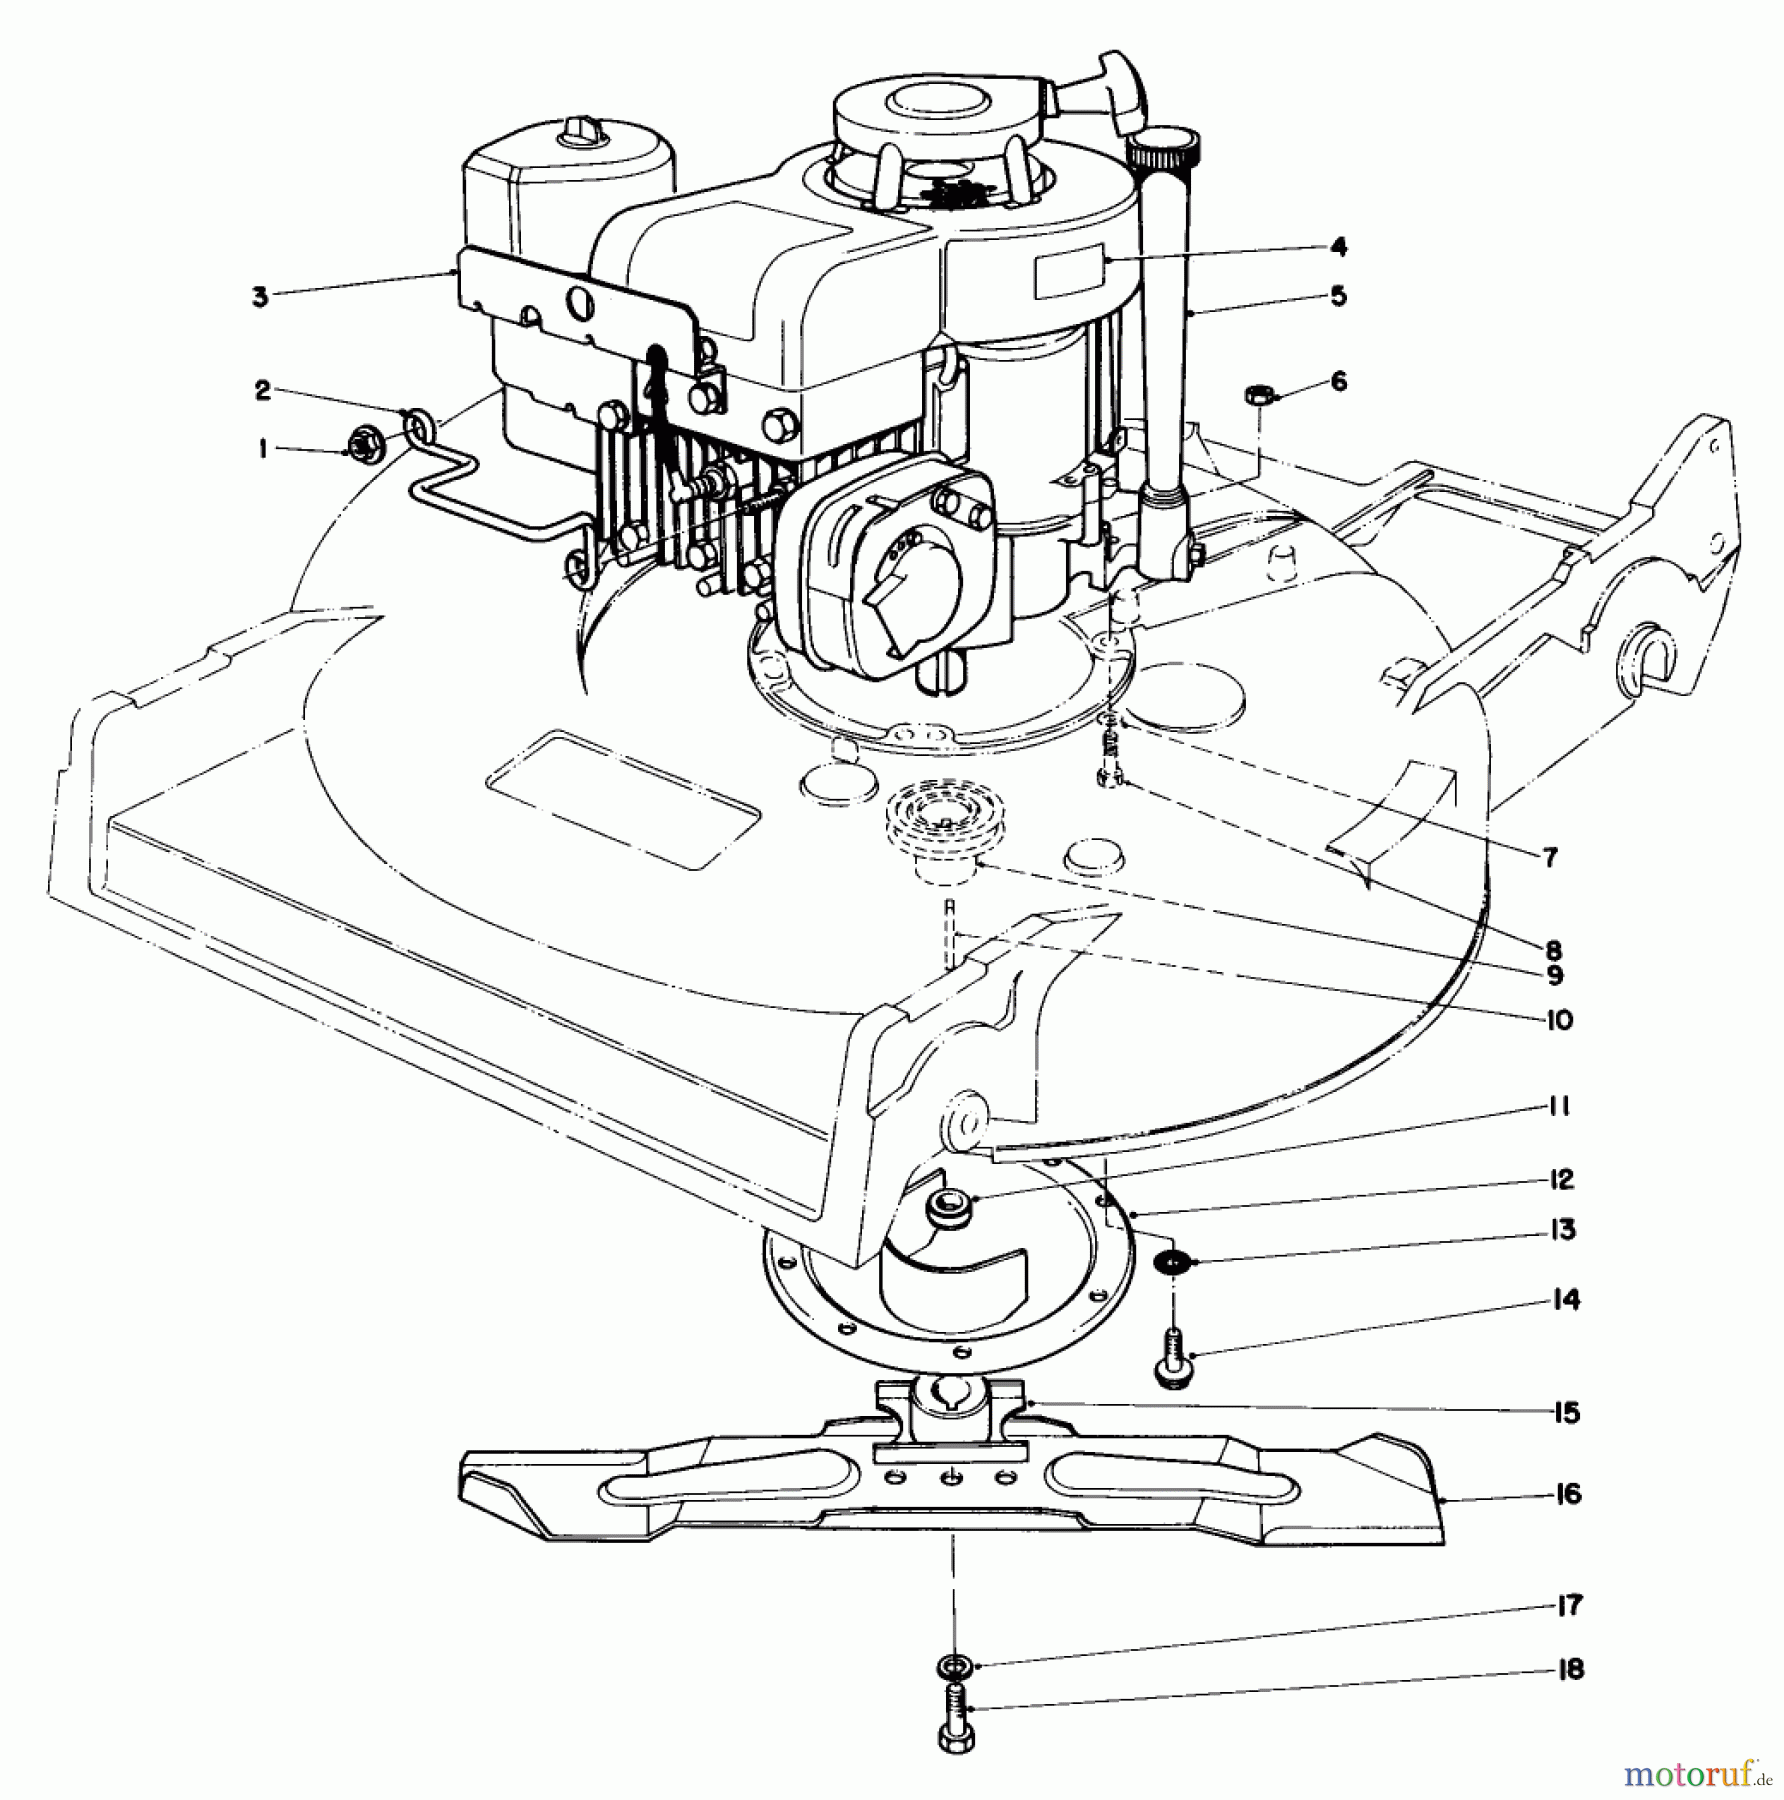  Toro Neu Mowers, Walk-Behind Seite 2 22020 - Toro Lawnmower, 1984 (4000001-4999999) ENGINE ASSEMBLY (MODEL 22020)